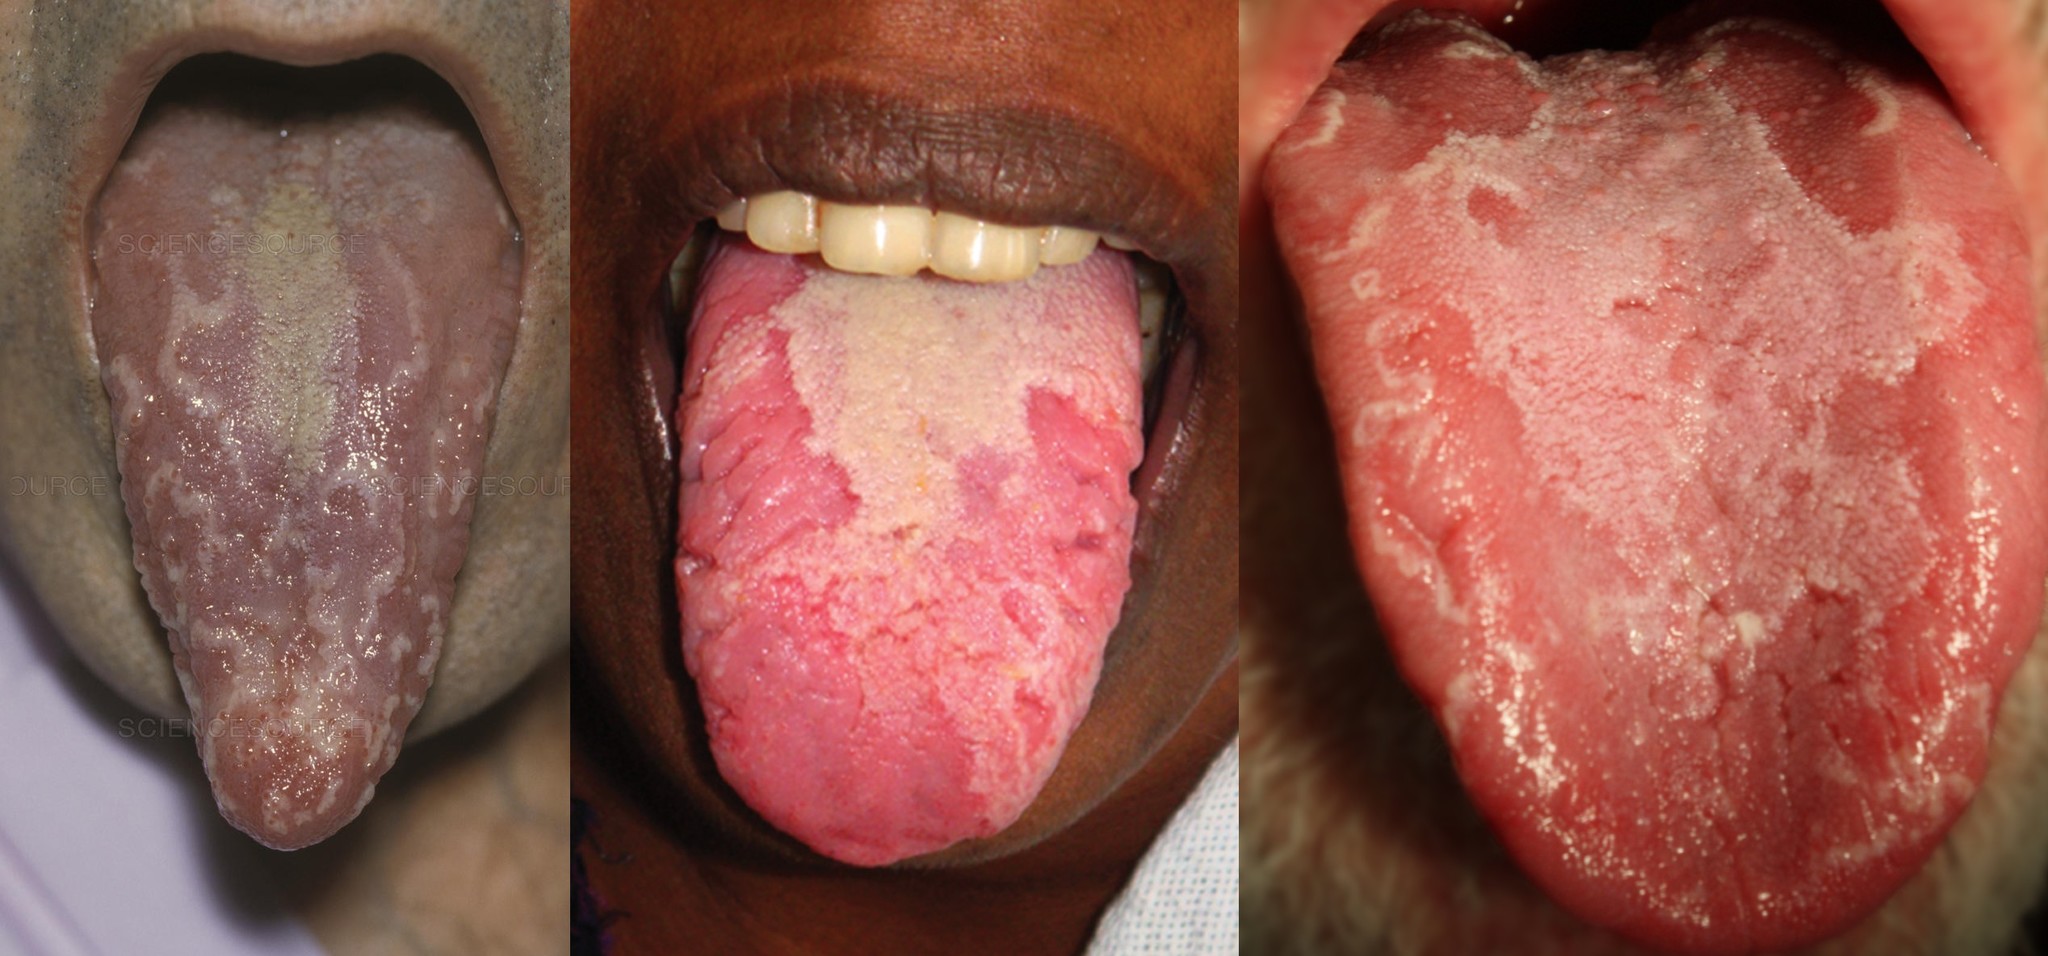 Глоссит или воспаление языка у взрослых: виды, симптомы, лечение